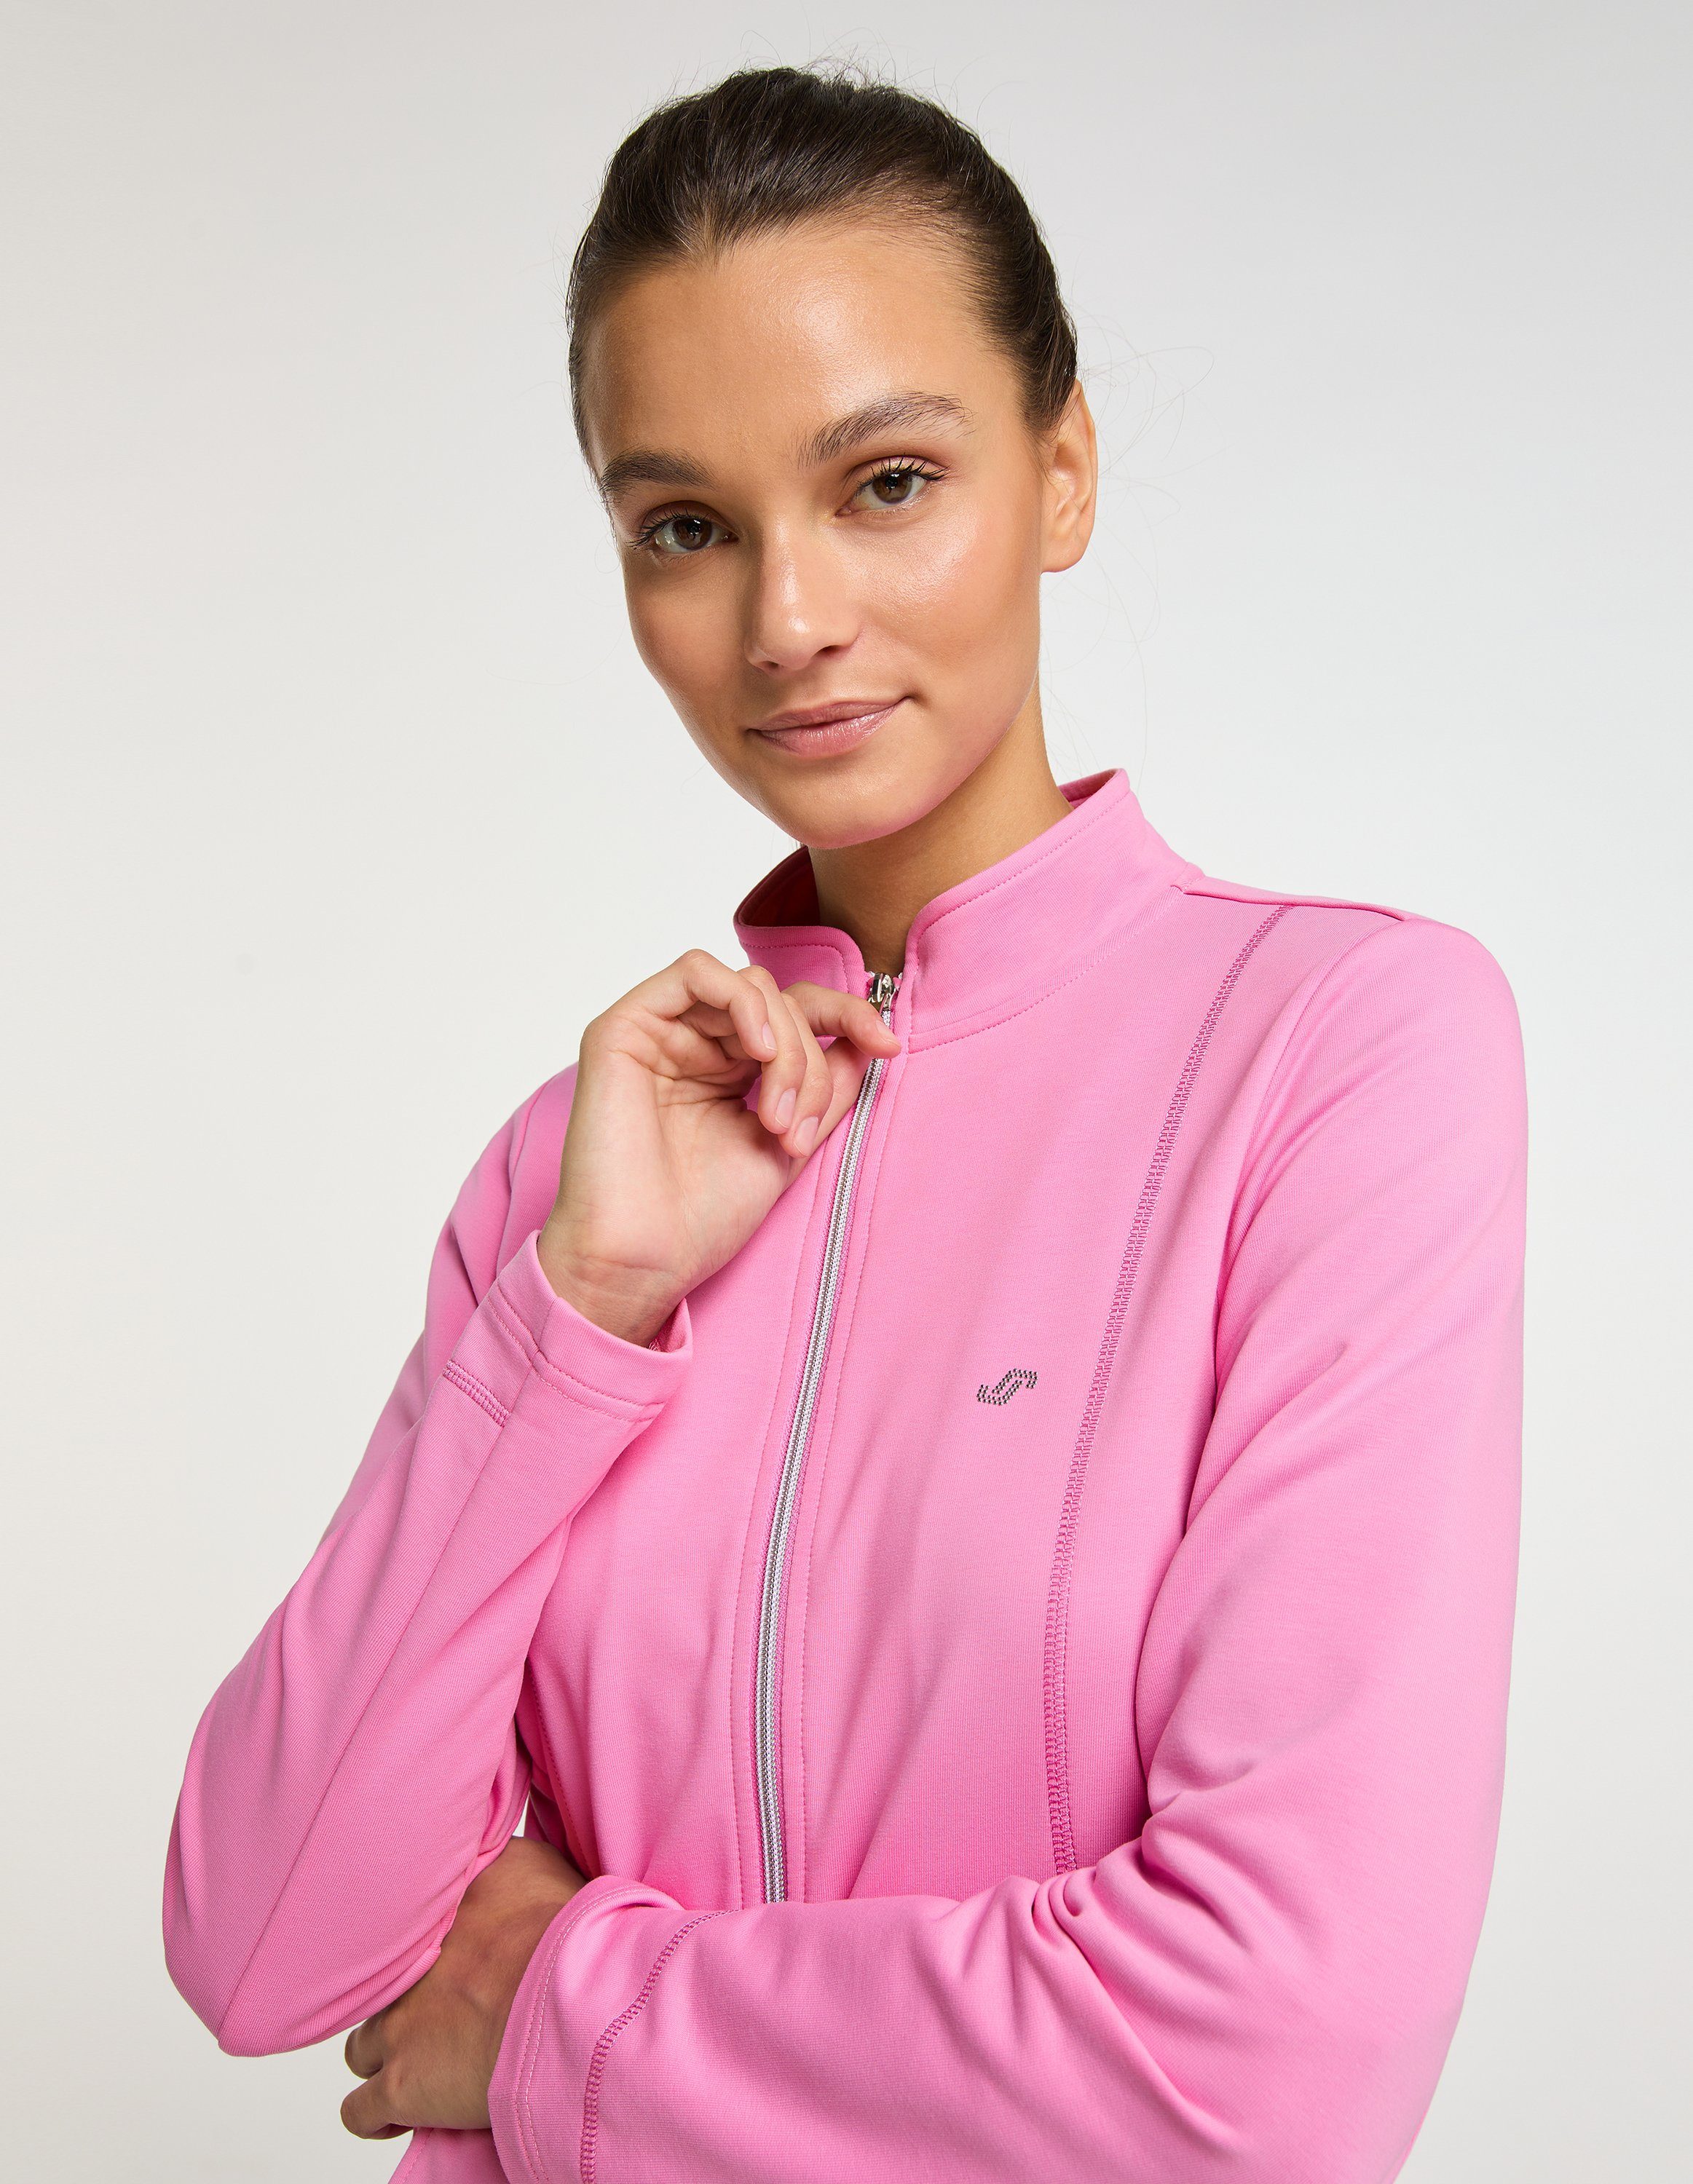 Trainingsjacke pink DORIT Jacke Sportswear Joy cyclam